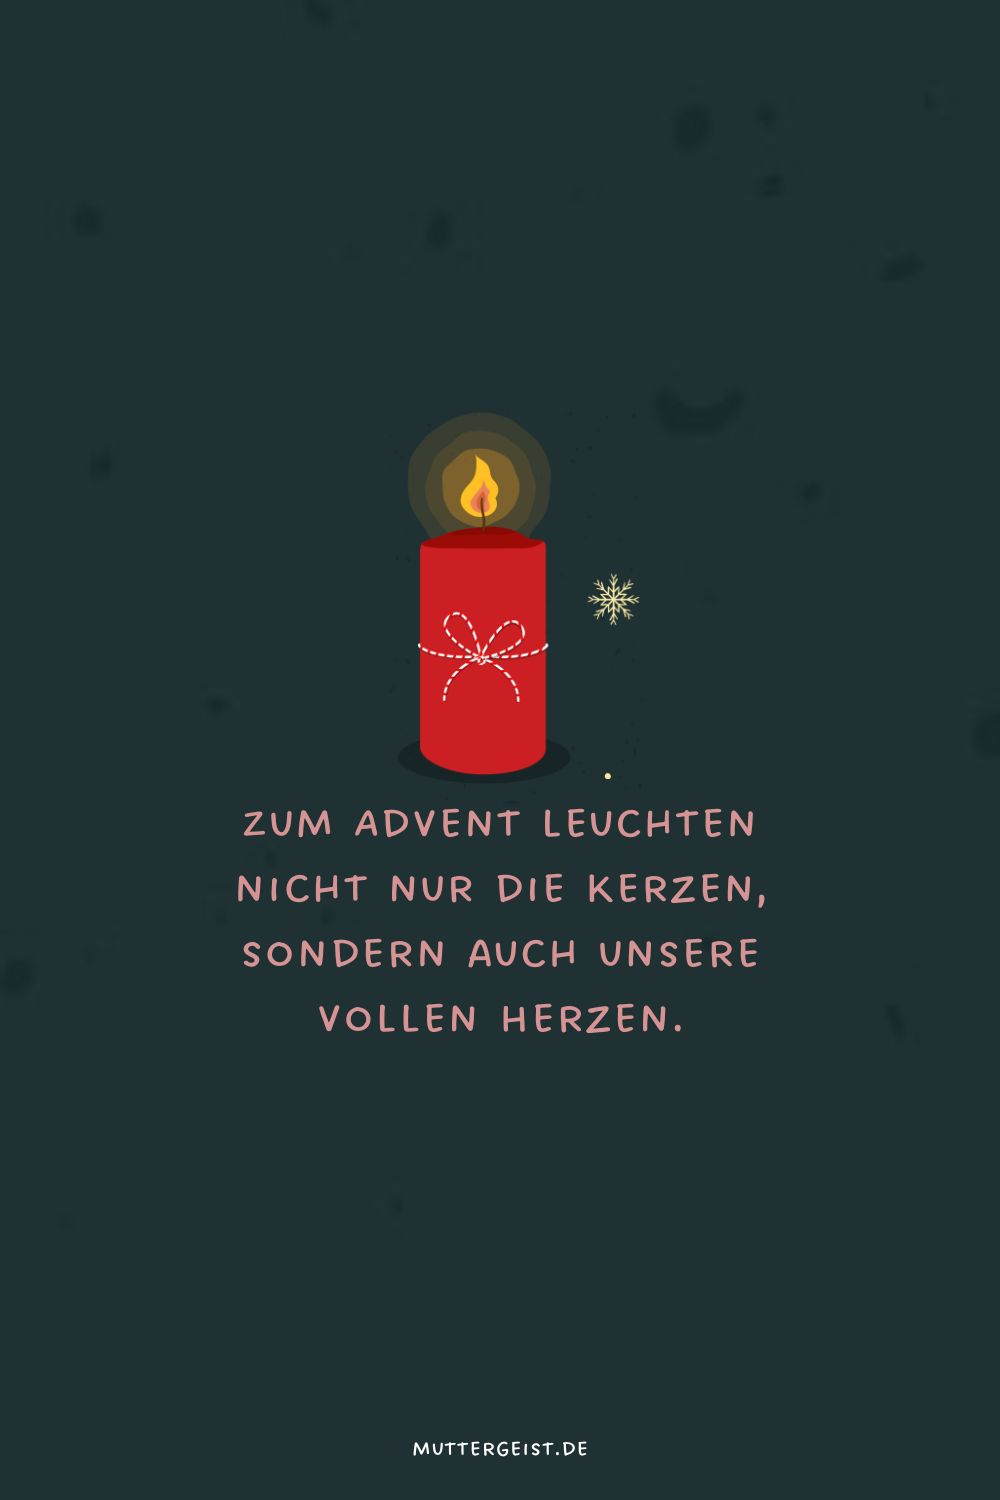 Zum Advent leuchten nicht nur die Kerzen, sondern auch unsere vollen Herzen